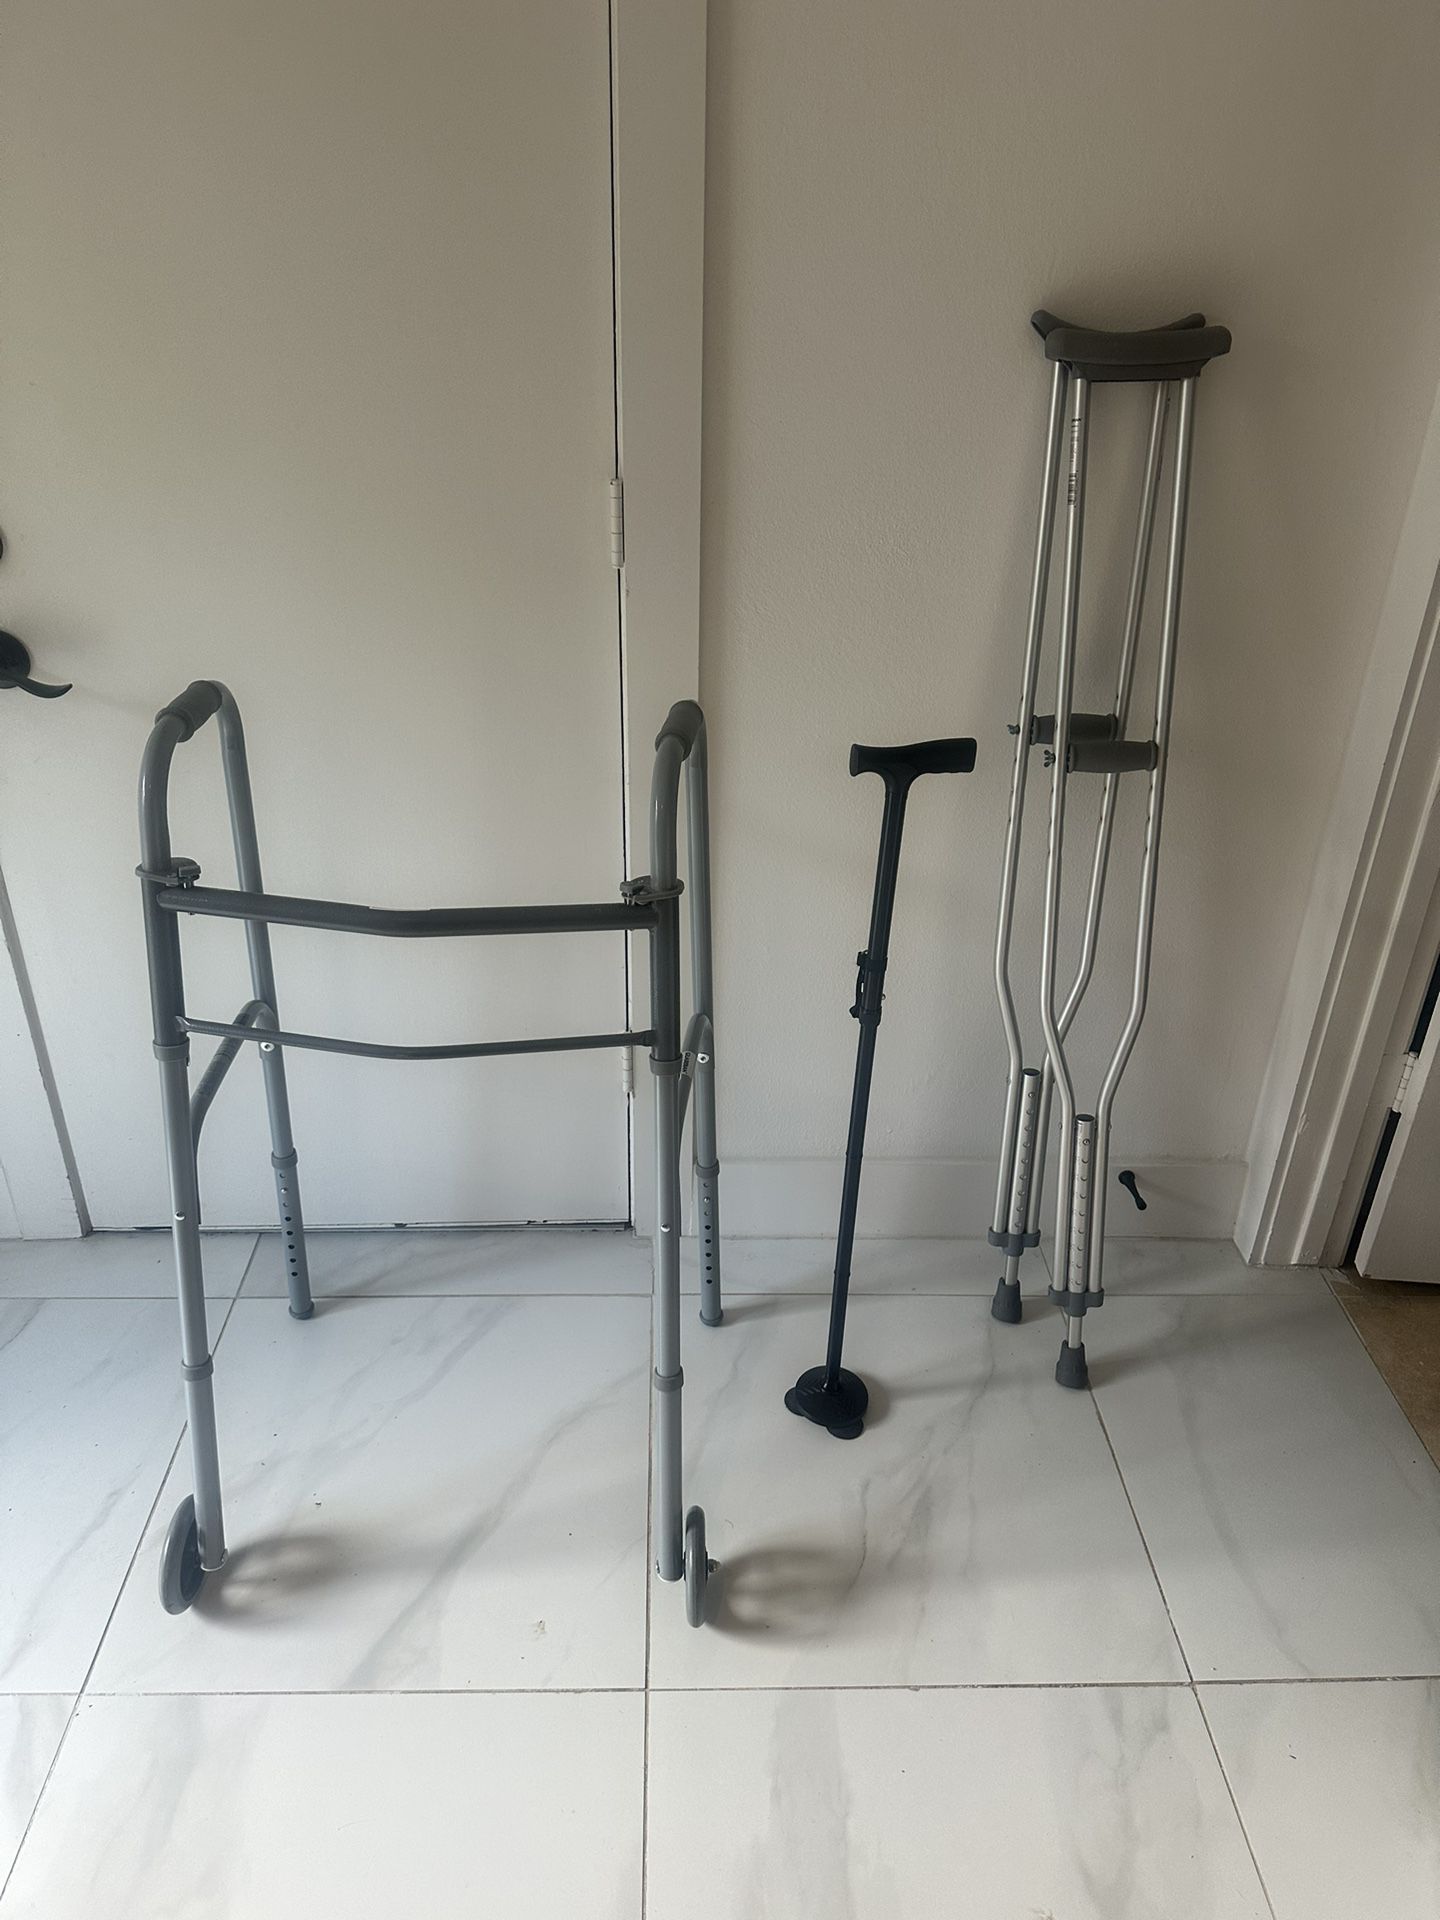 Walker, Crutches & Cane 